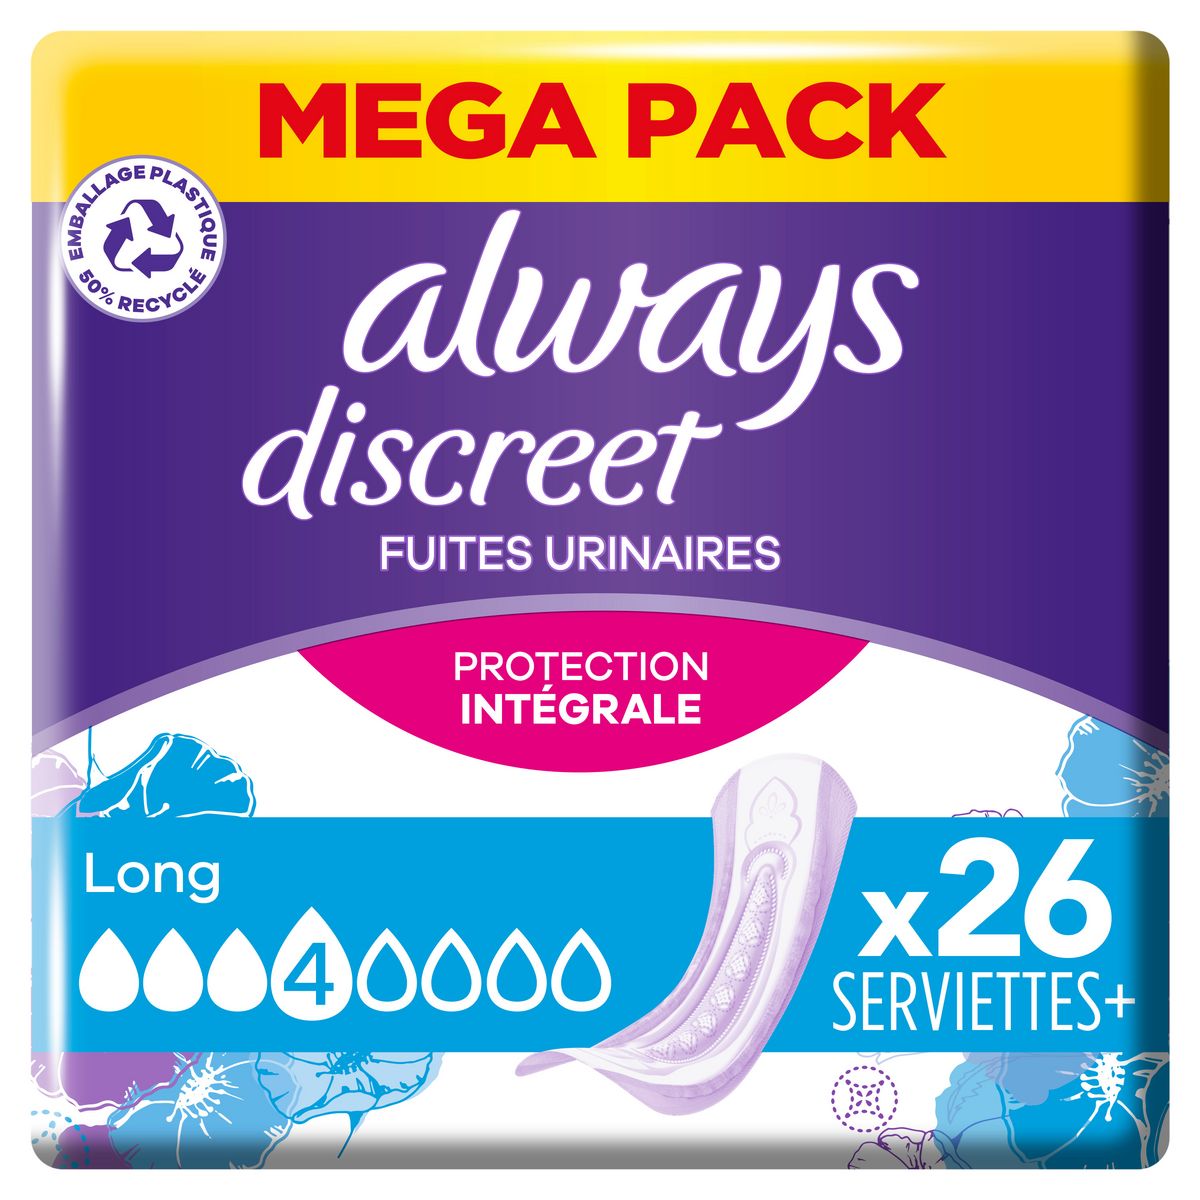 ALWAYS Discreet serviettes long pour fuites urinaires 26 serviettes